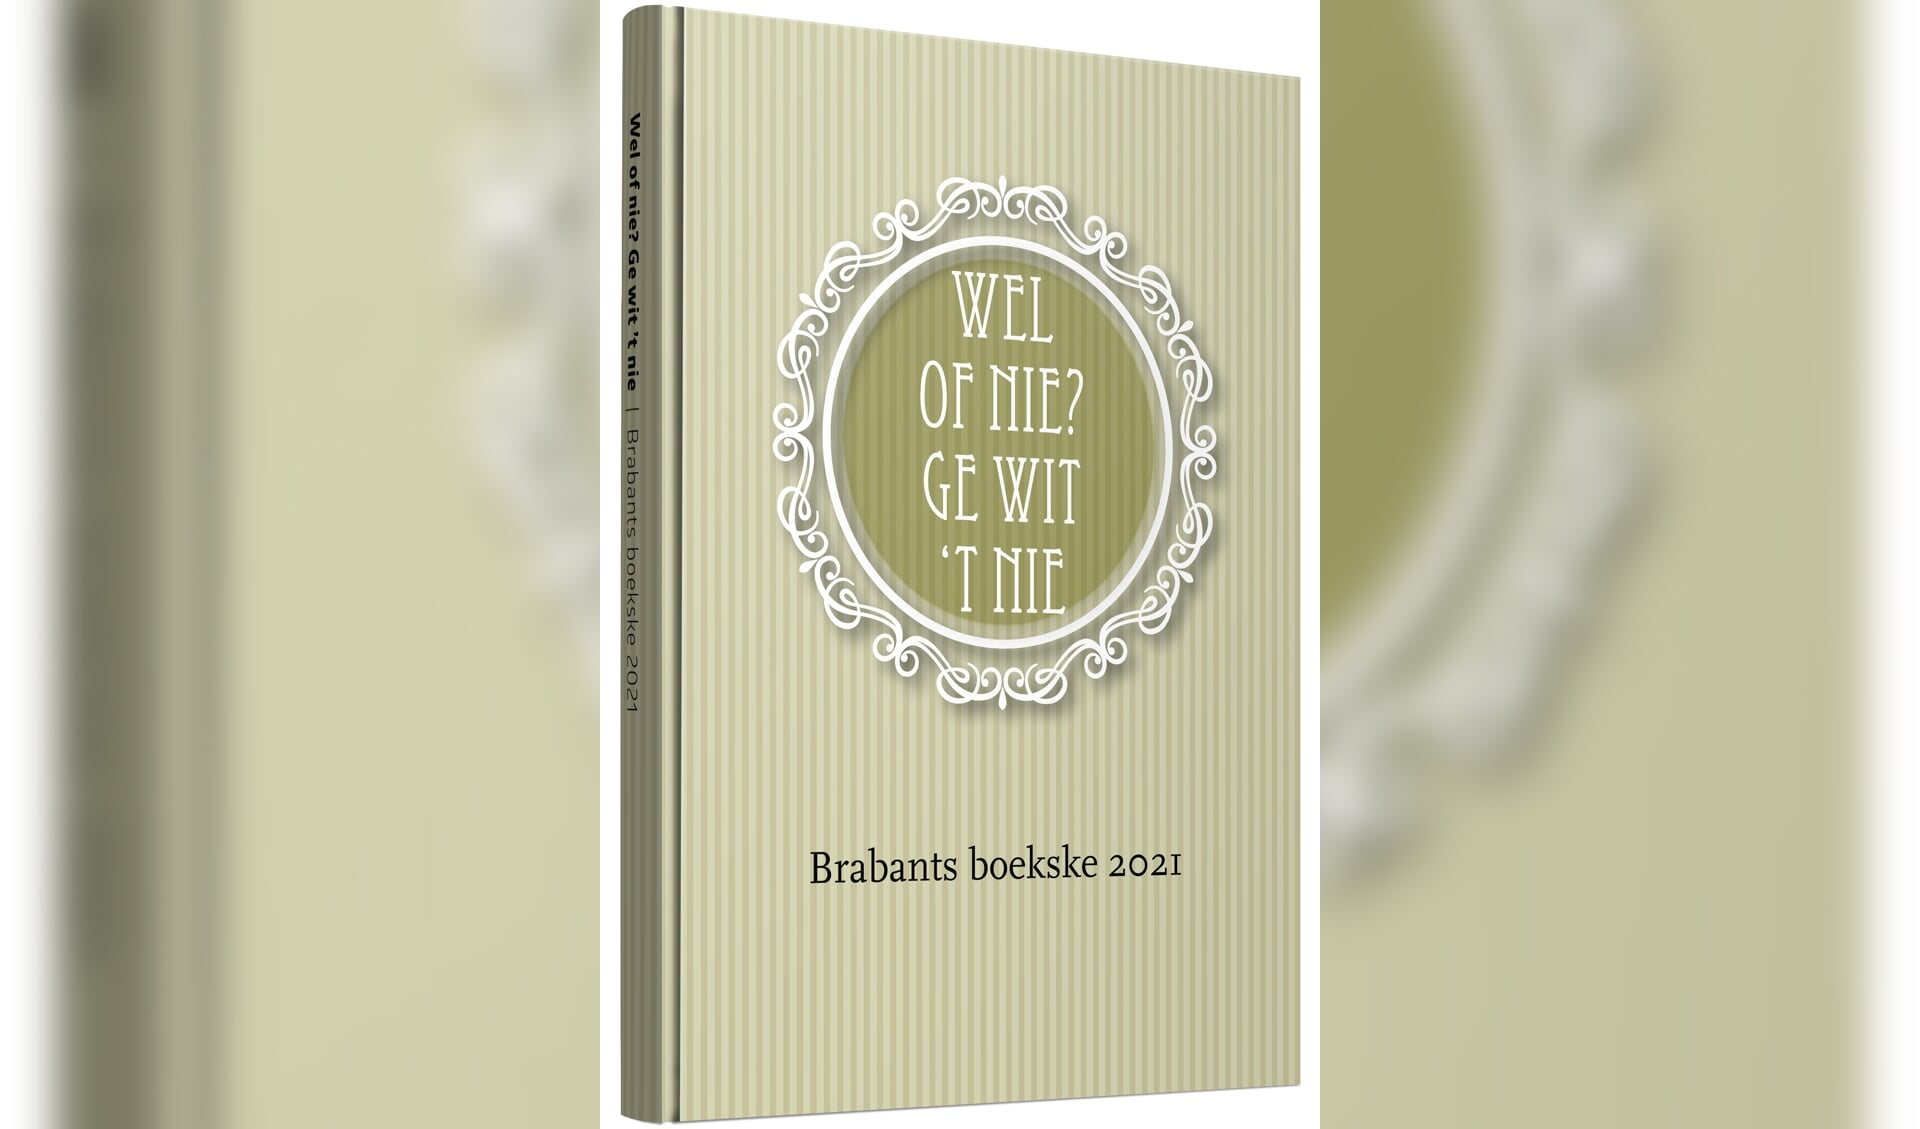 Brabants boekske 2021